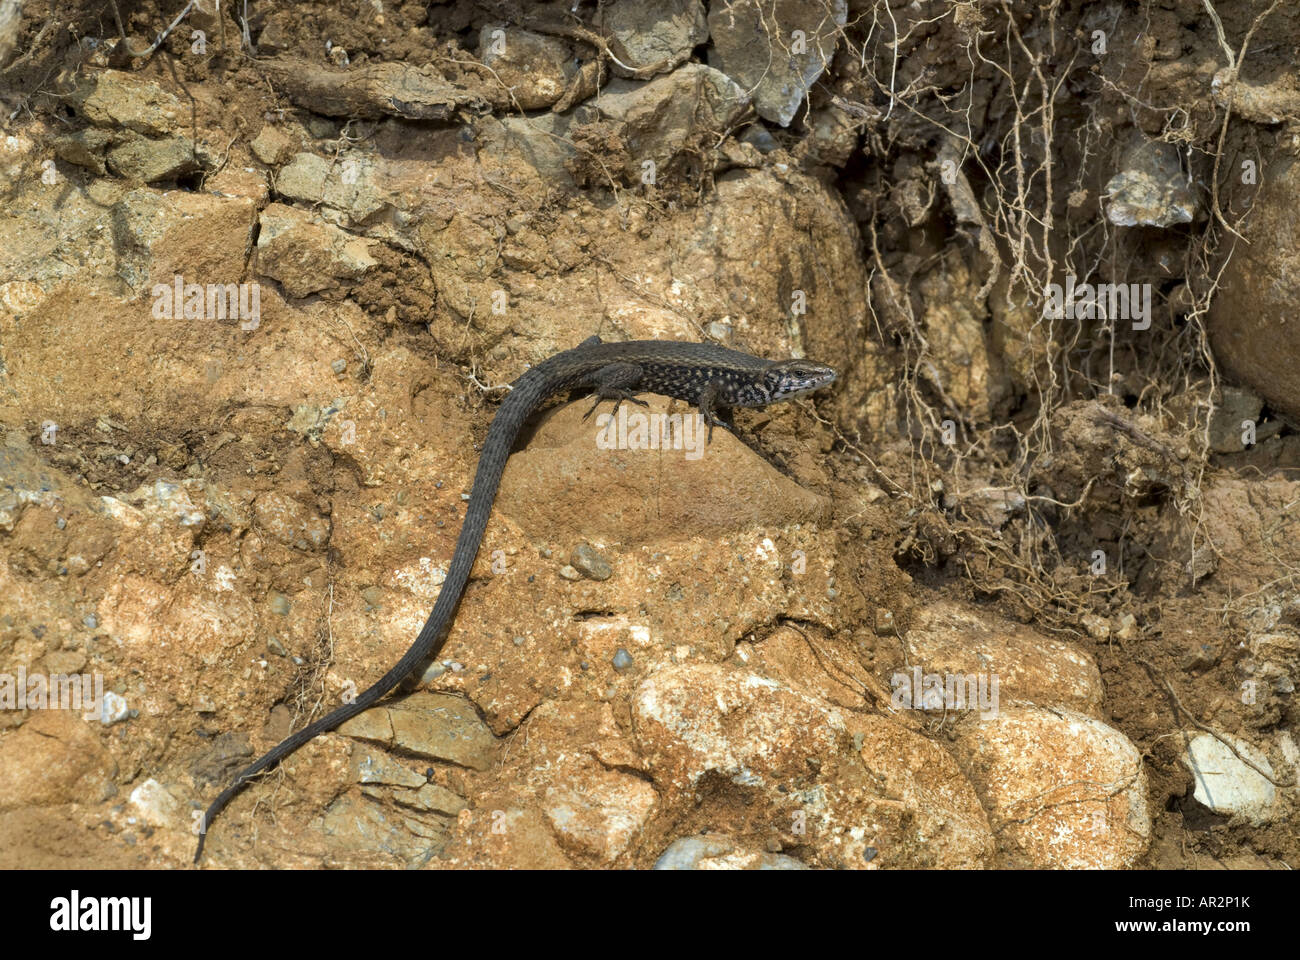 Griego keeled lizard (Algyroides moreoticus), sobre una pared de piedra, Grecia, Peloponnes, Messinien, Pylos Foto de stock